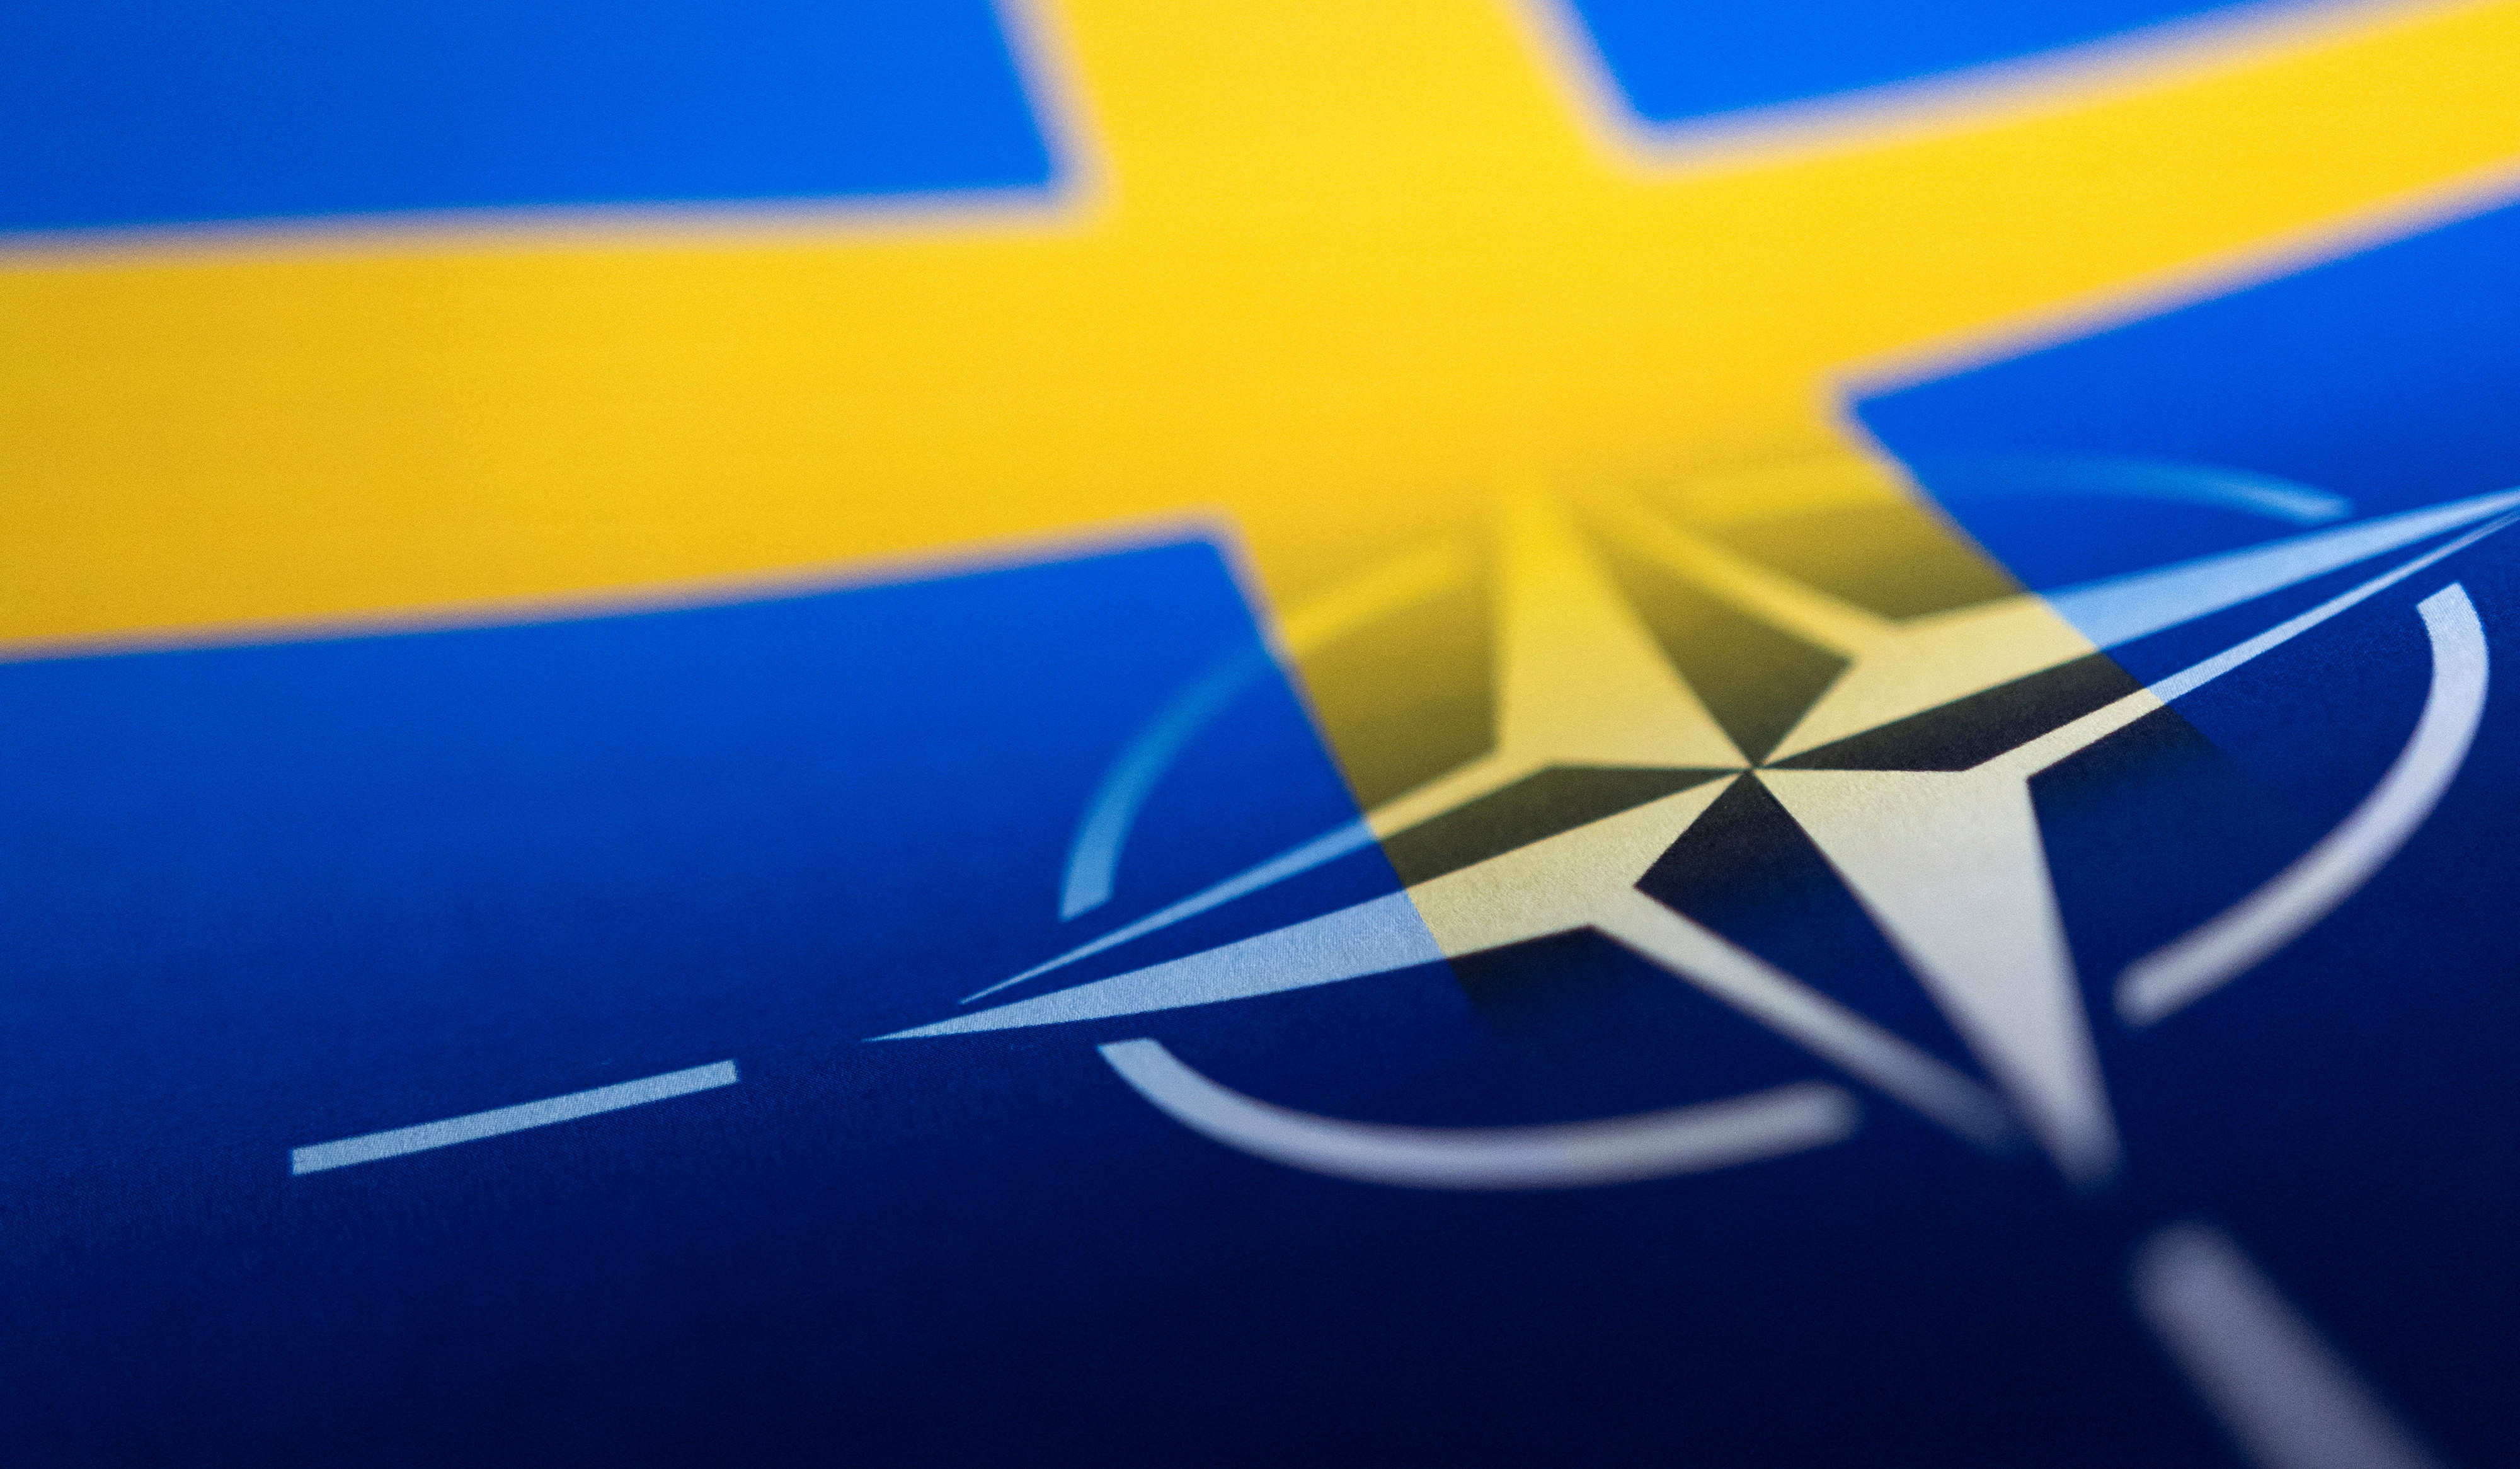 Շվեդիան այսօր պաշտոնապես կդառնա ՆԱՏՕ-ի անդամ. Սպիտակ տուն